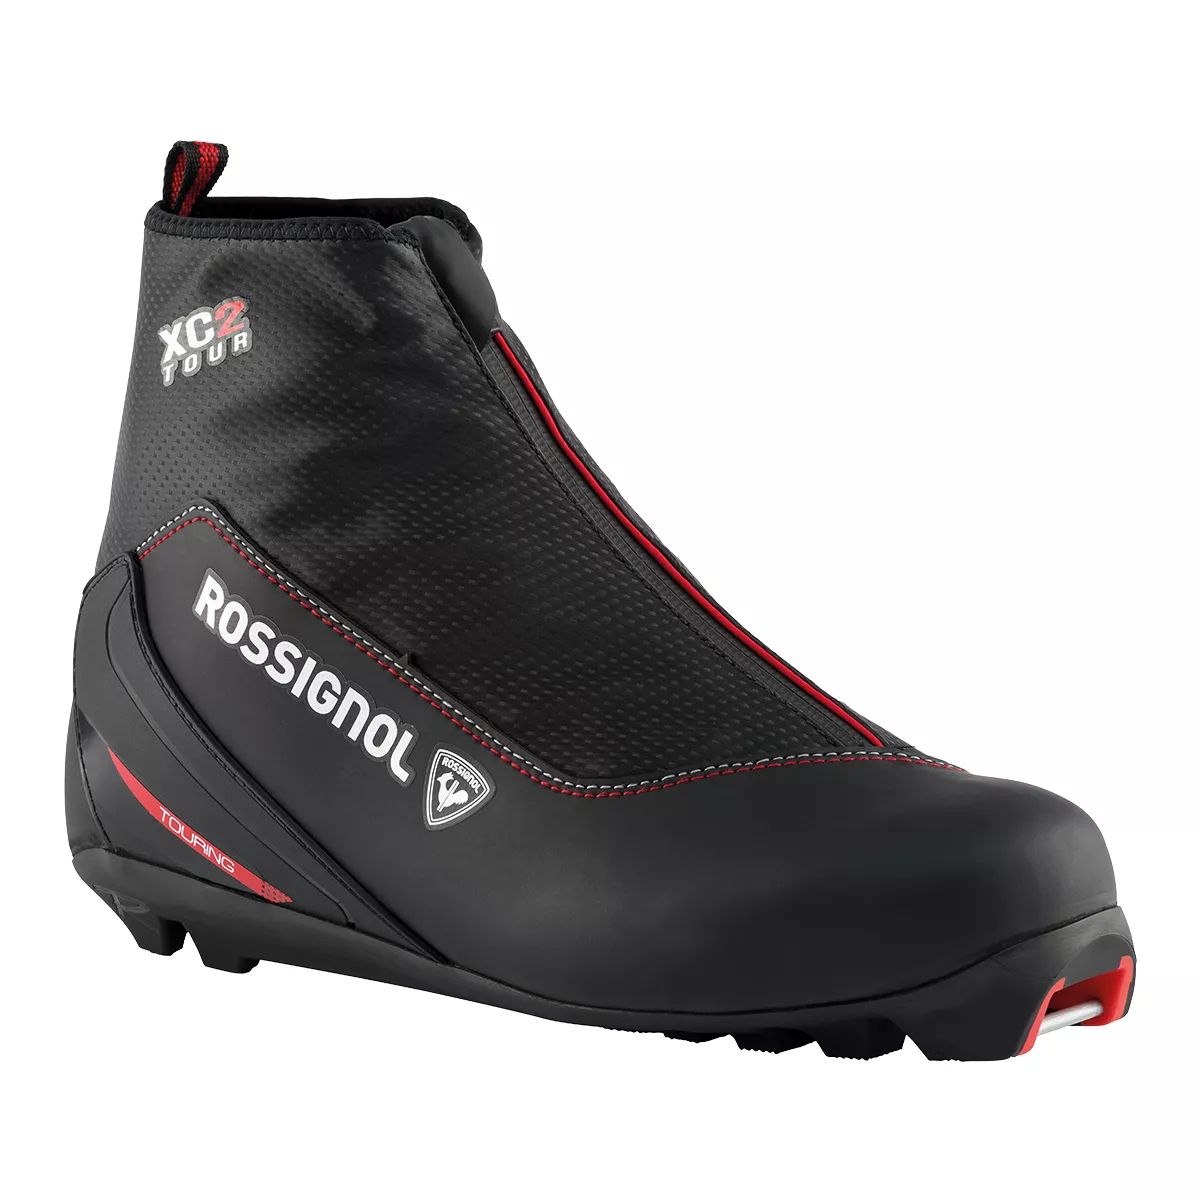 Image of Rossignol Men's XC5 Nordic Ski Boots 2020/21